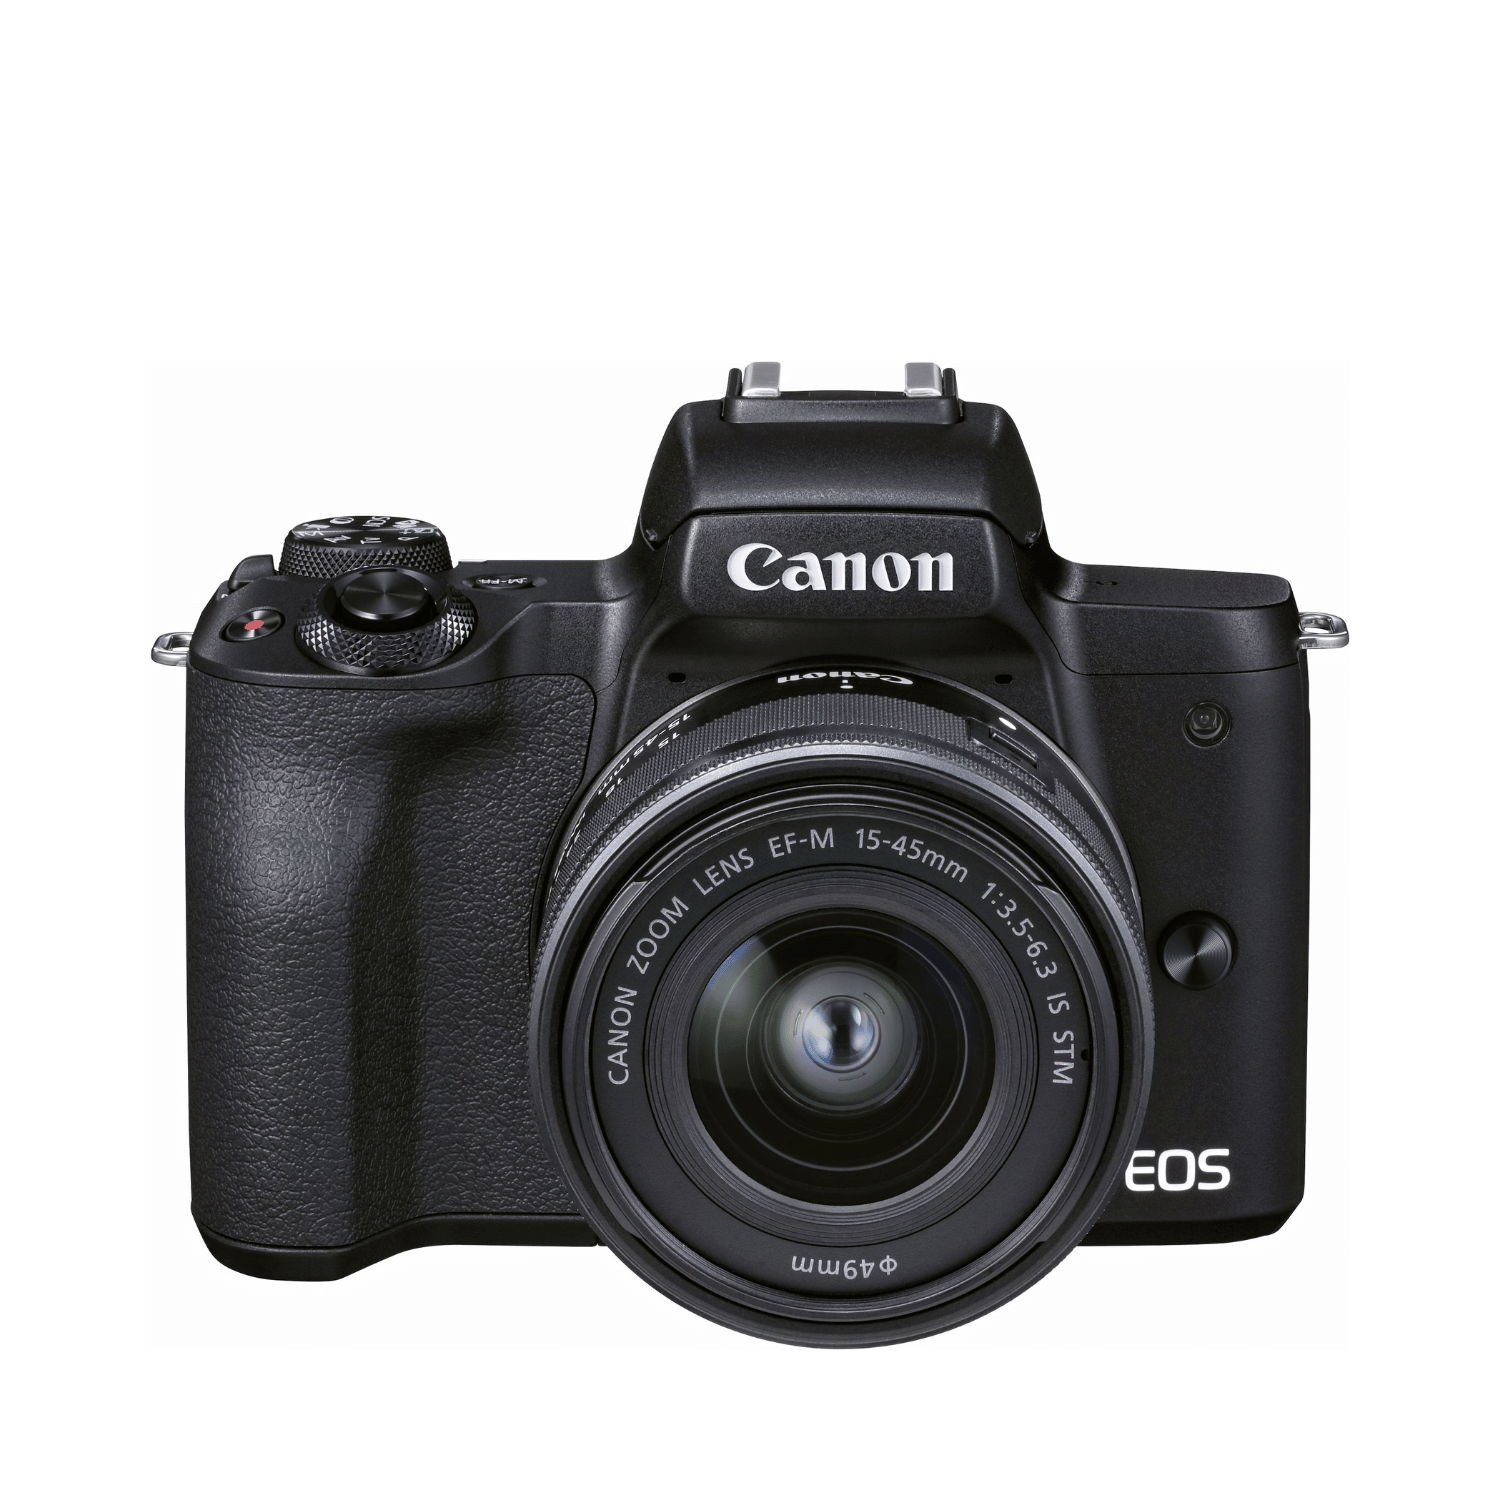 Canon M50 Mark II Black 15-45mm - Gar. Canon Italia -Cine Sud è da 48 anni sul mercato - 4728C007